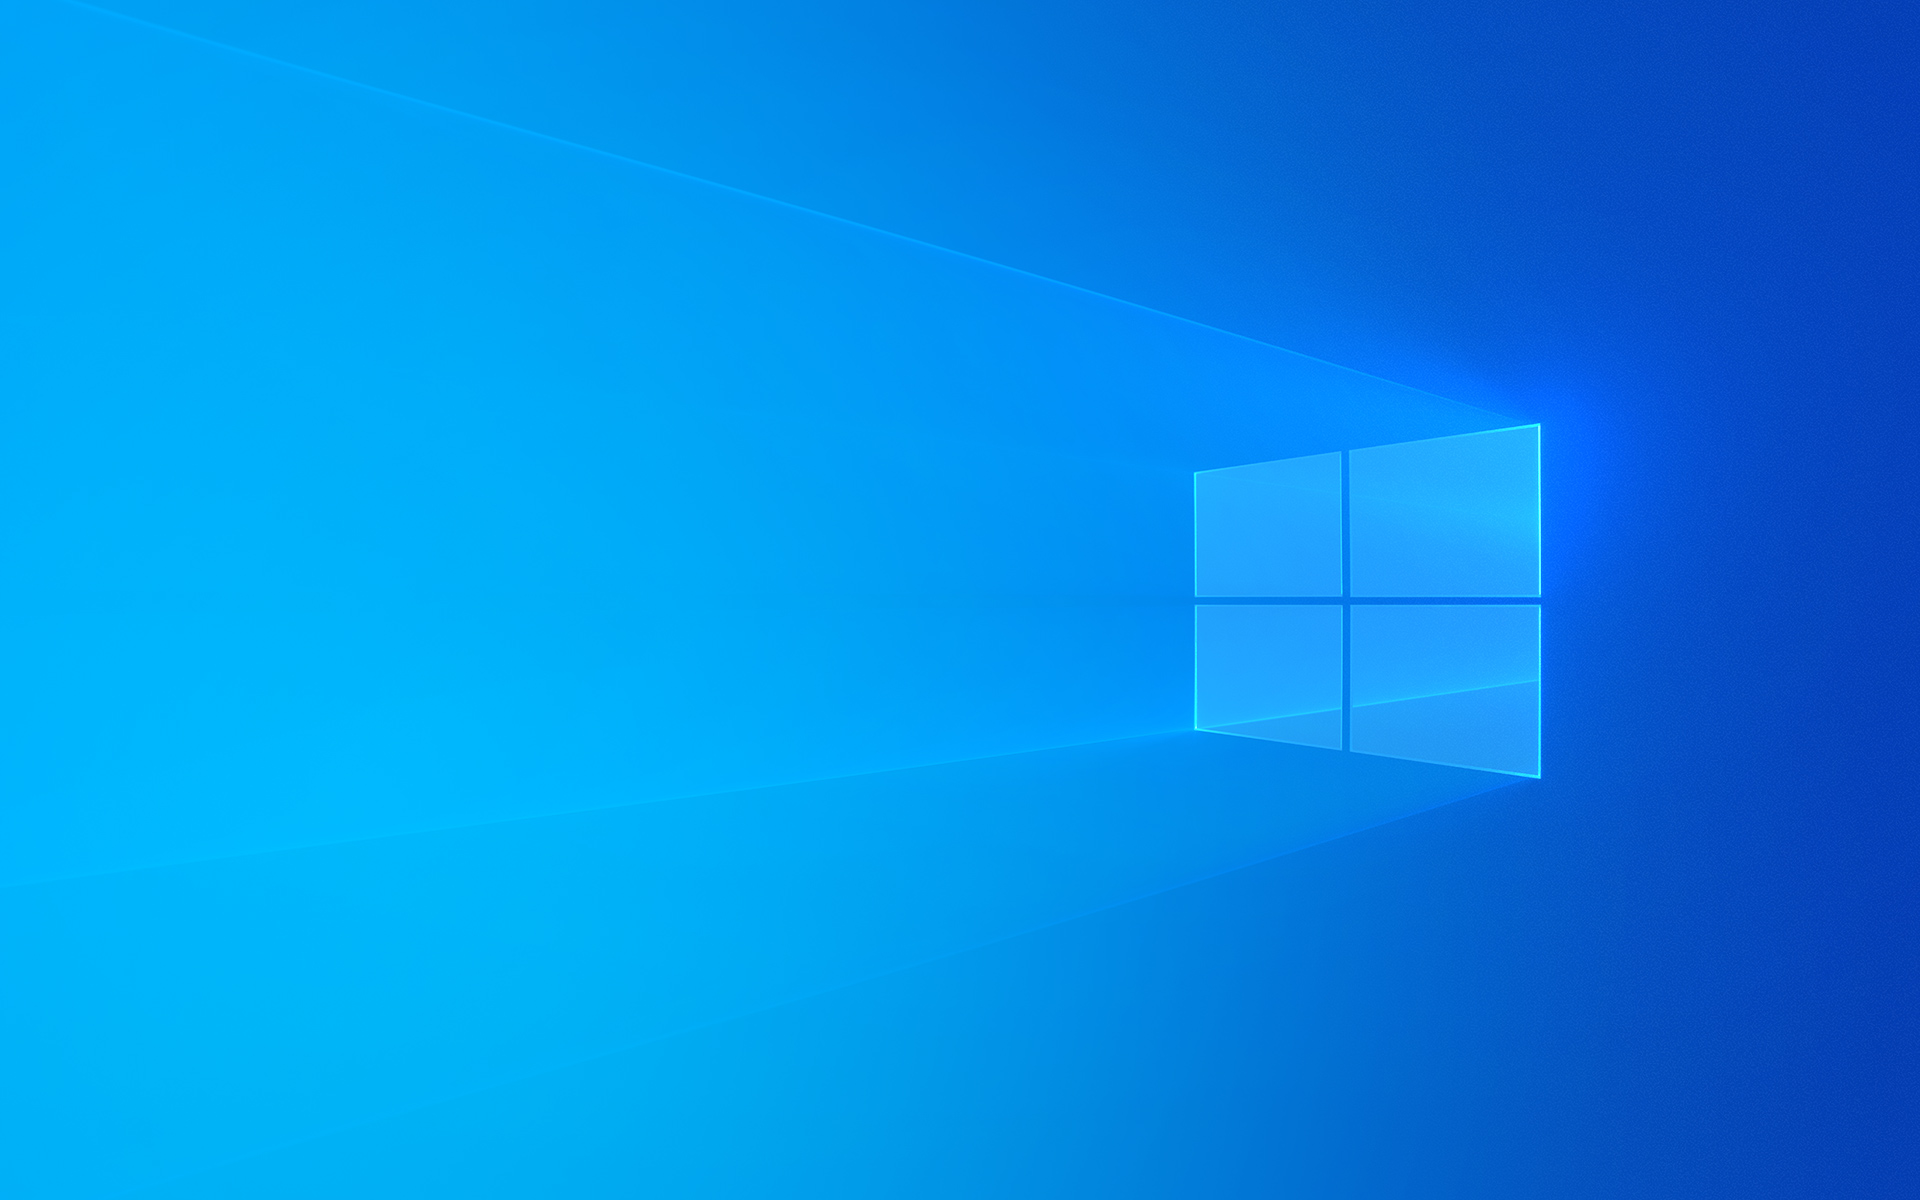 Bộ cài Windows 10 sẽ giúp bạn cài đặt hệ điều hành mới nhất của Microsoft một cách nhanh chóng và dễ dàng. Hãy nhanh tay tải về và cập nhật ngay để không bỏ lỡ những tính năng mới nhất của Windows 10.